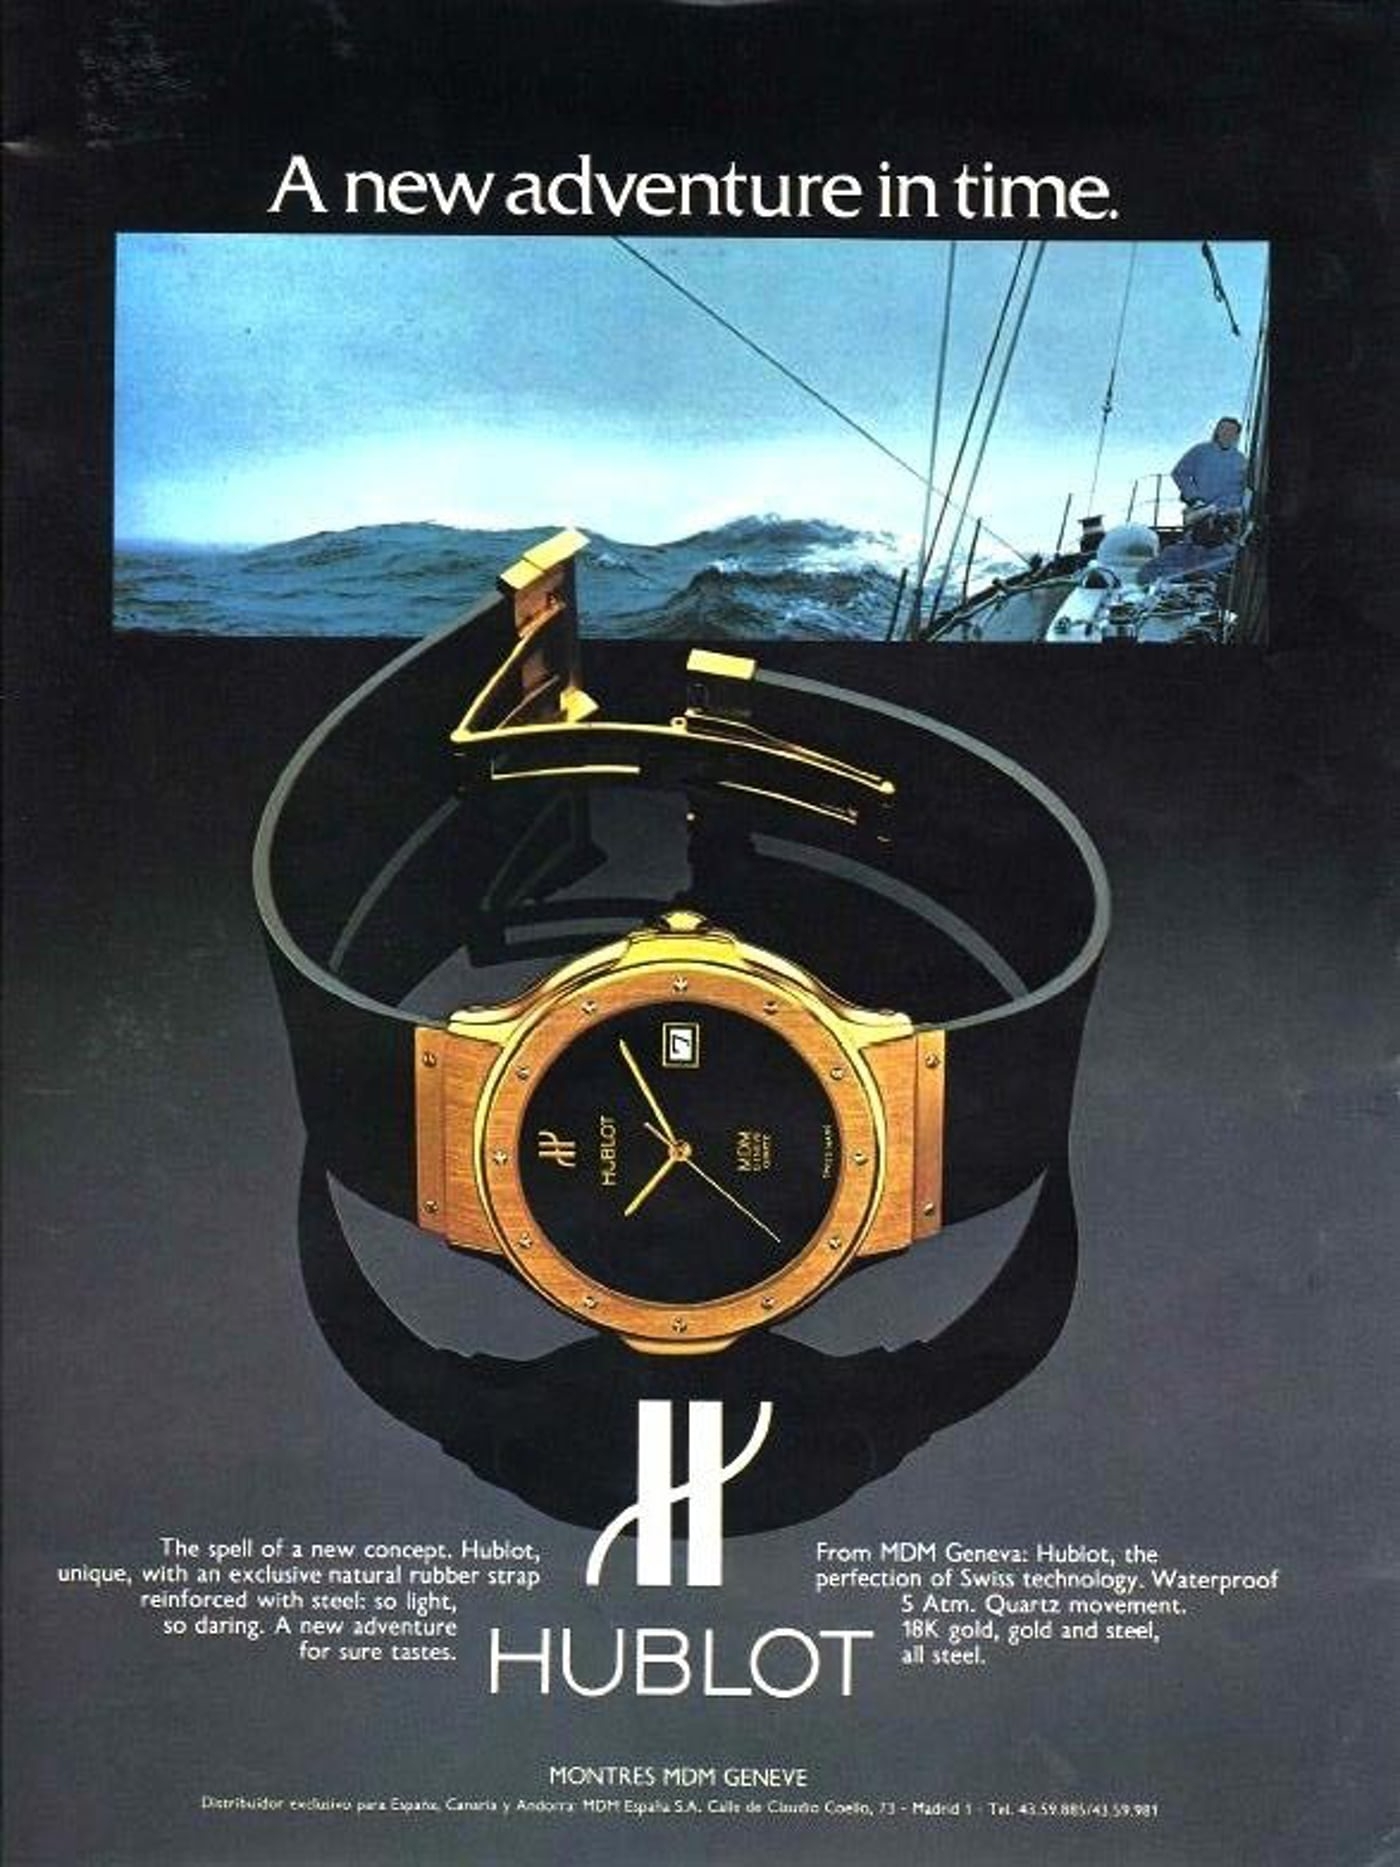 Tấm áp phích quảng cáo đồng hồ MDM Geneva Hublot